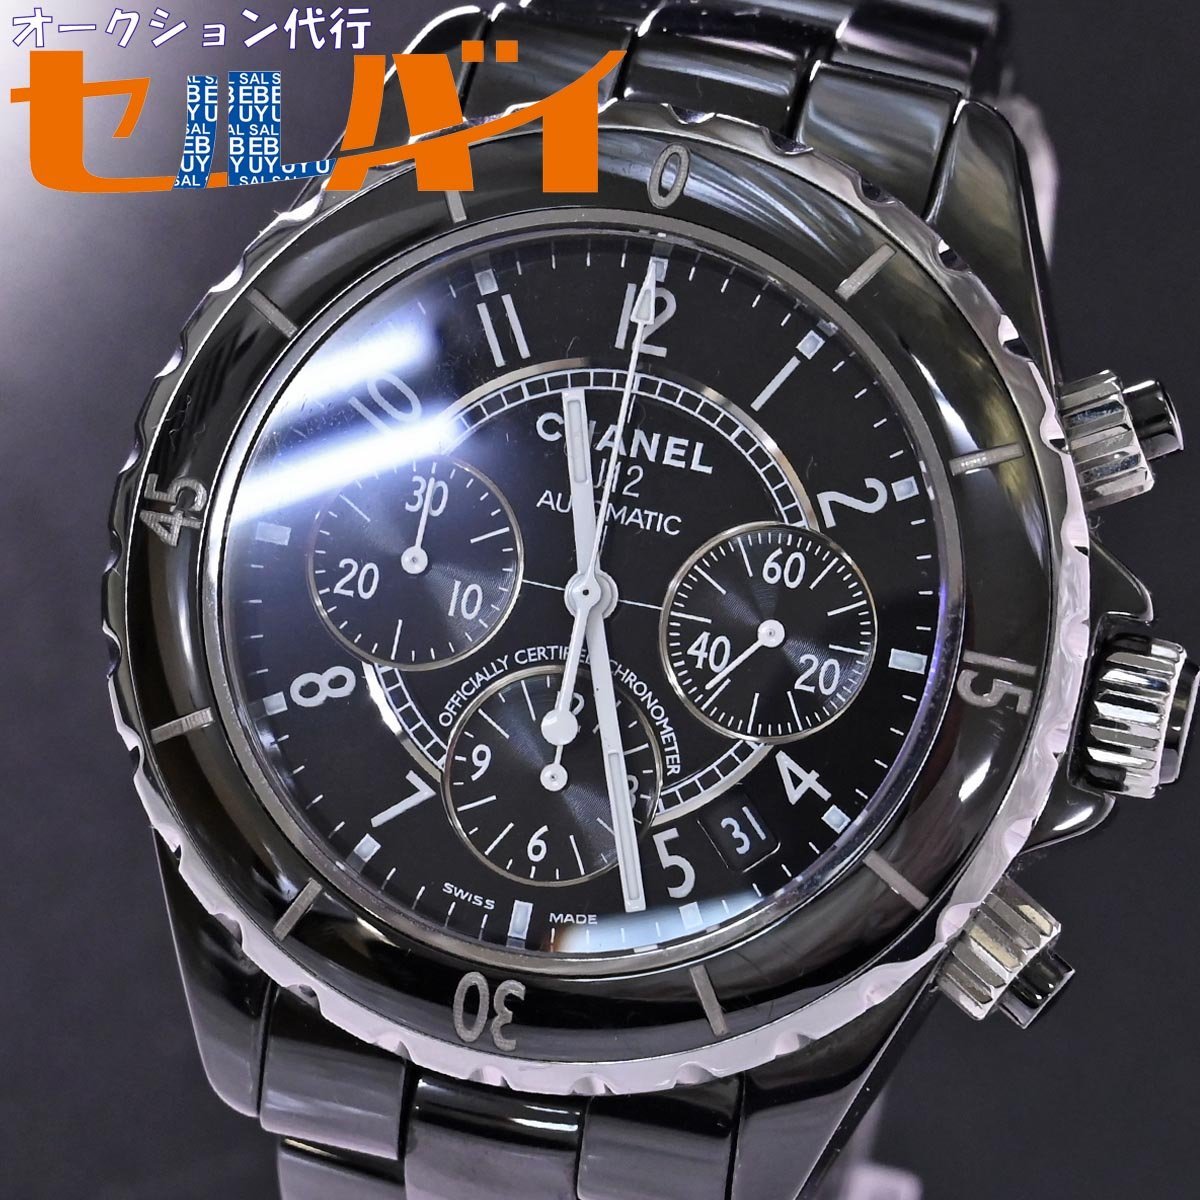 本物 美品 シャネル J12 オートマチック クロノグラフ 41MM ブラックセラミック メンズウォッチ 男性用自動巻腕時計 純正CEブレス CHANEL